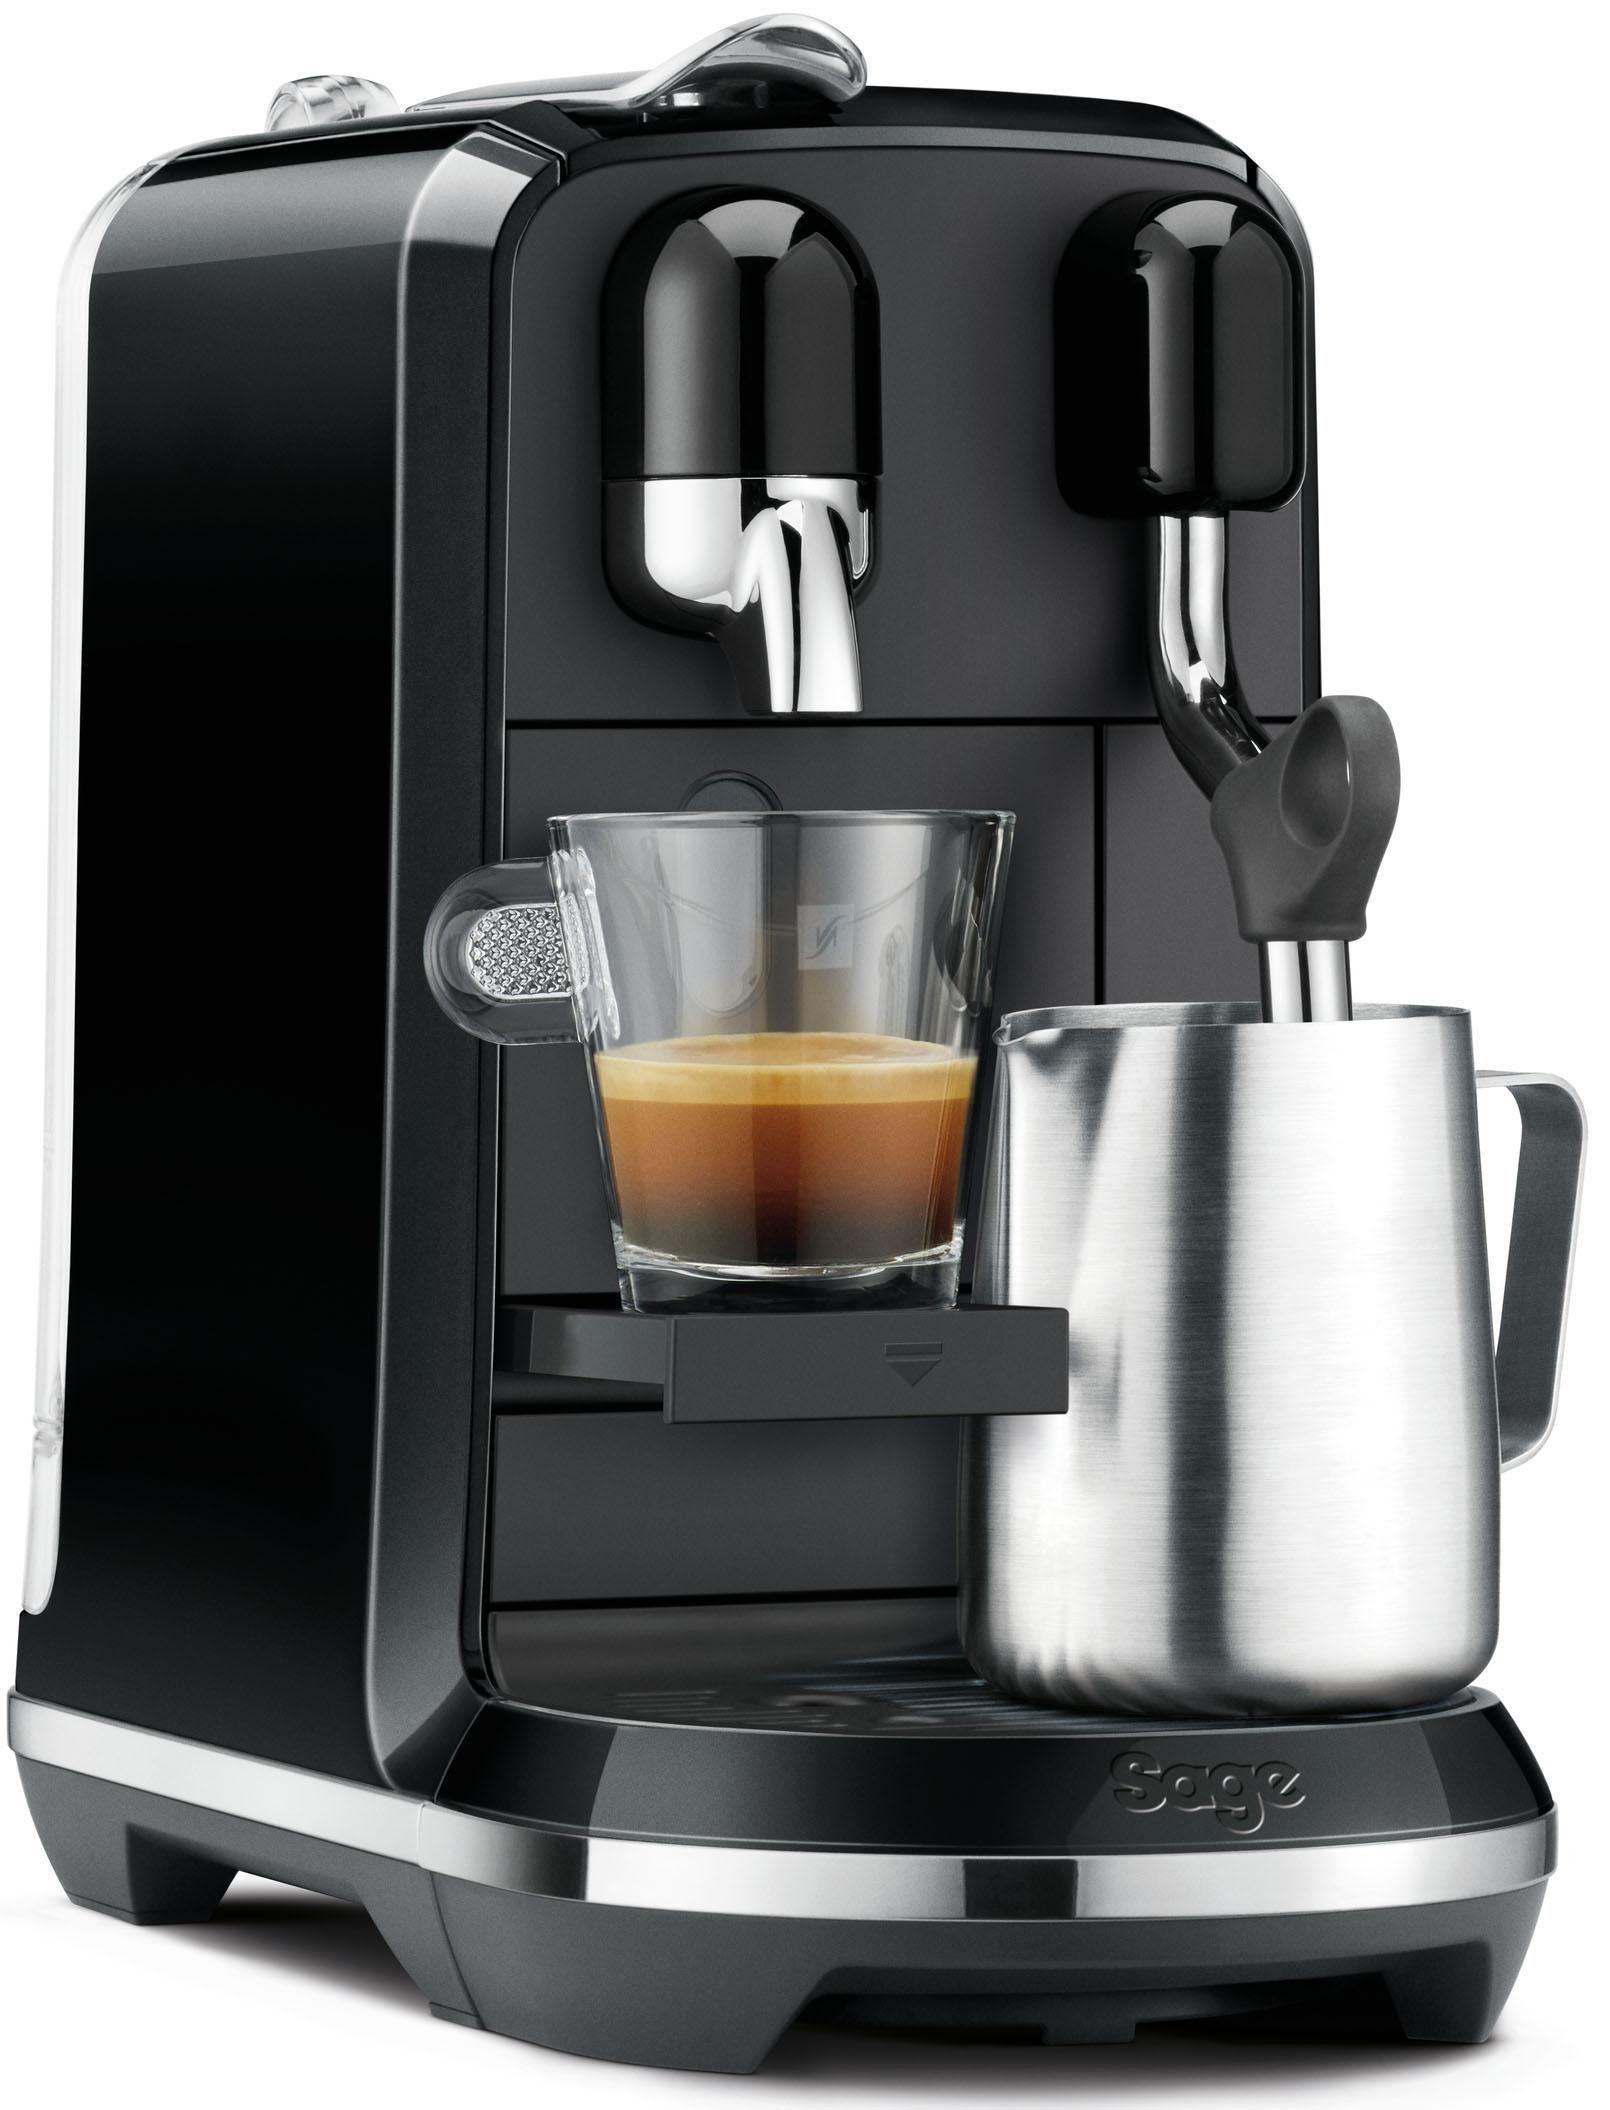 Kapselmaschine inkl. Uno mit mit Nespresso SNE500 Willkommenspaket 14 Edelstahl-Milchkanne, Kapseln Creatista